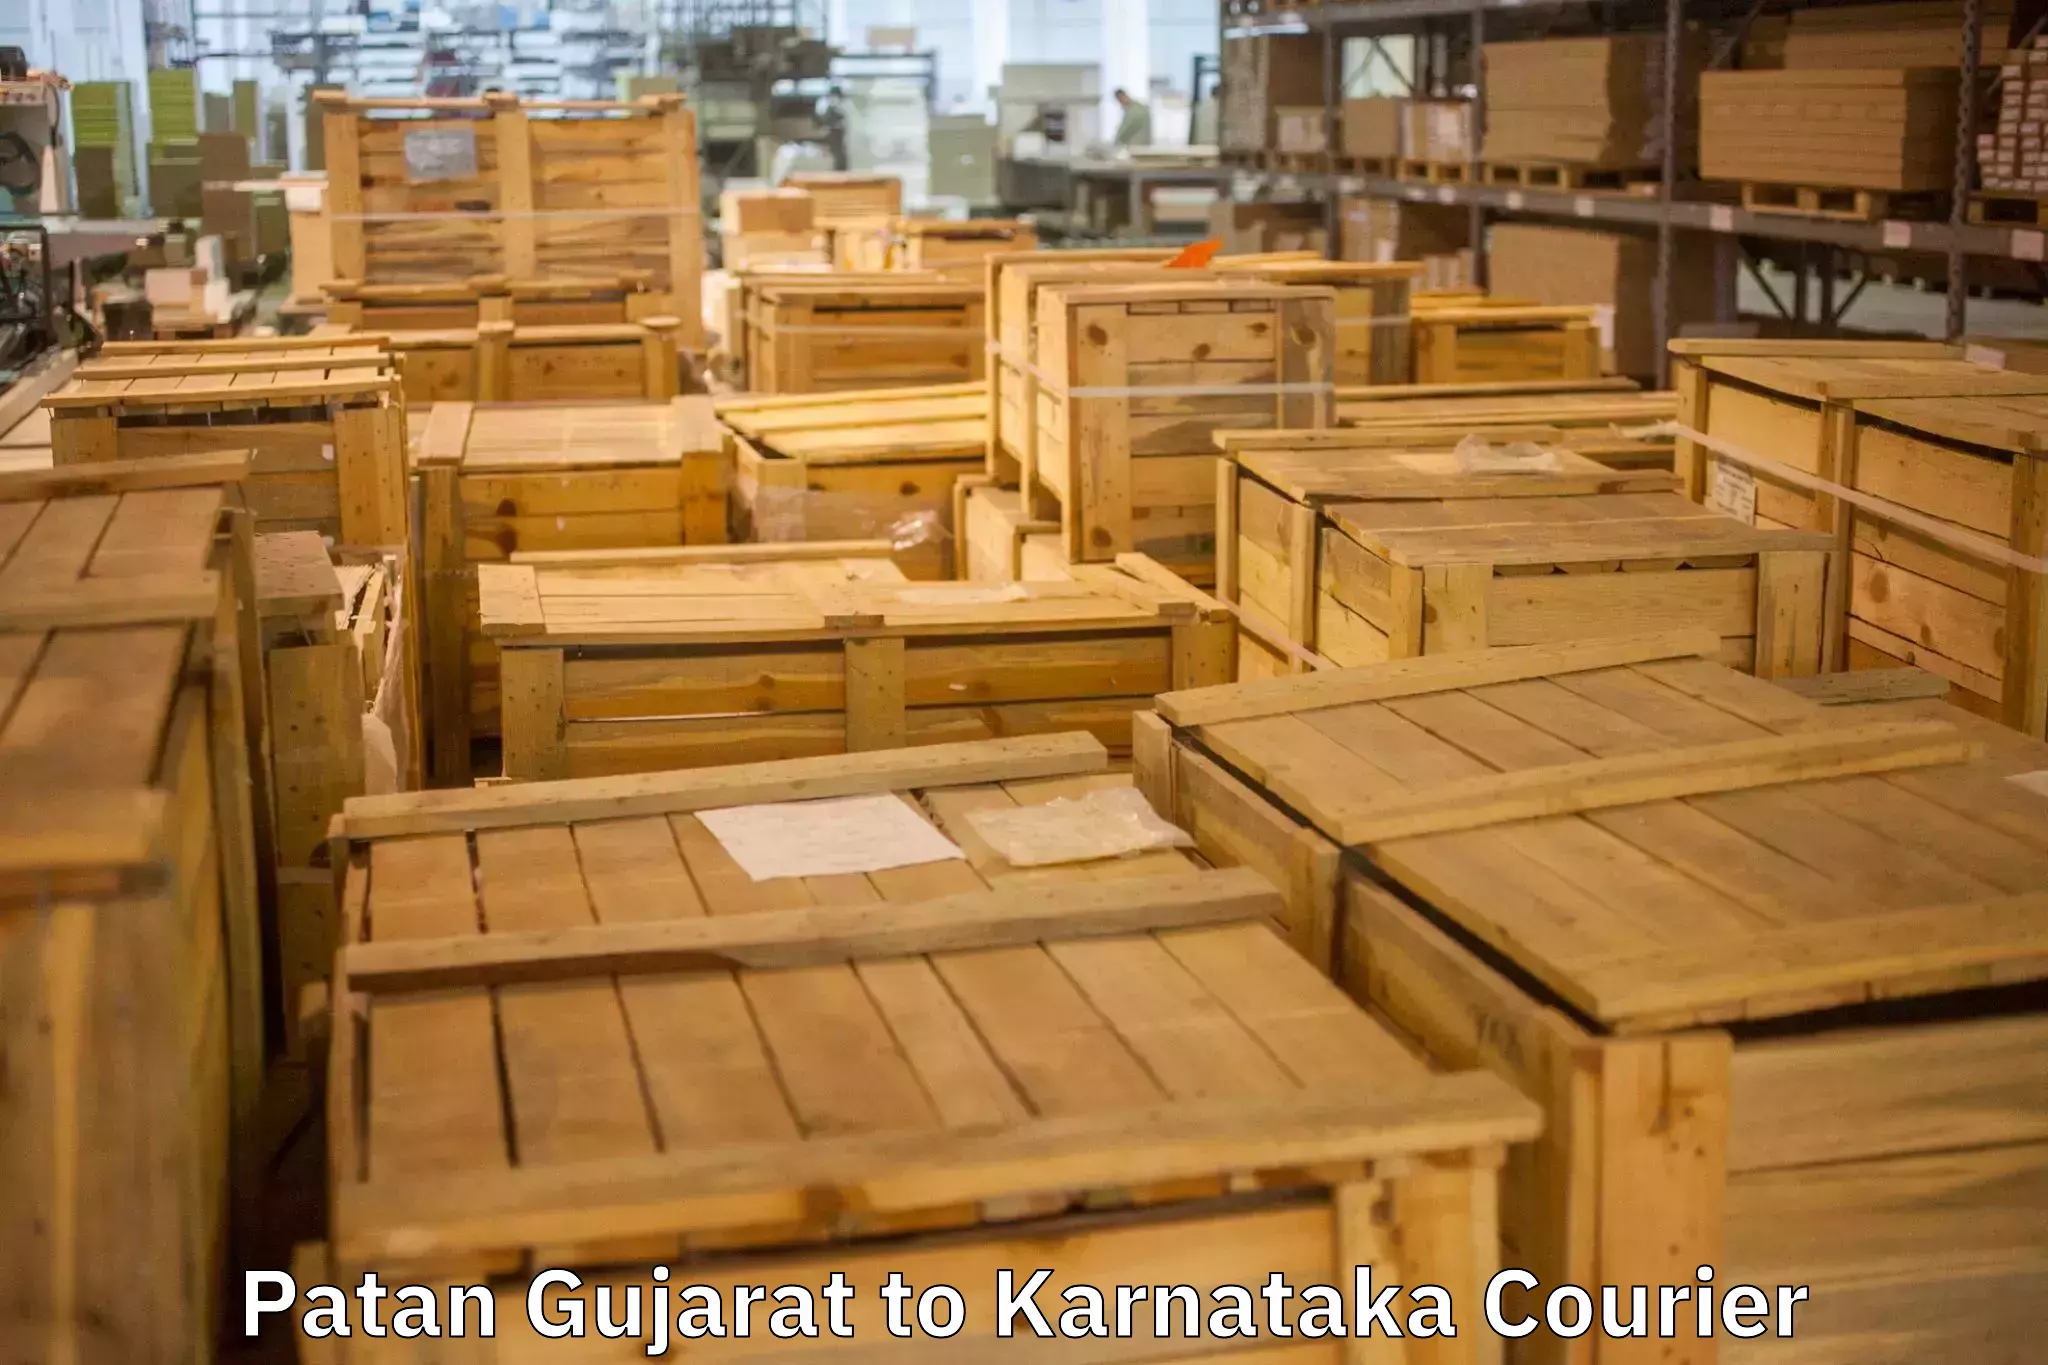 Expert goods movers Patan Gujarat to Belagavi